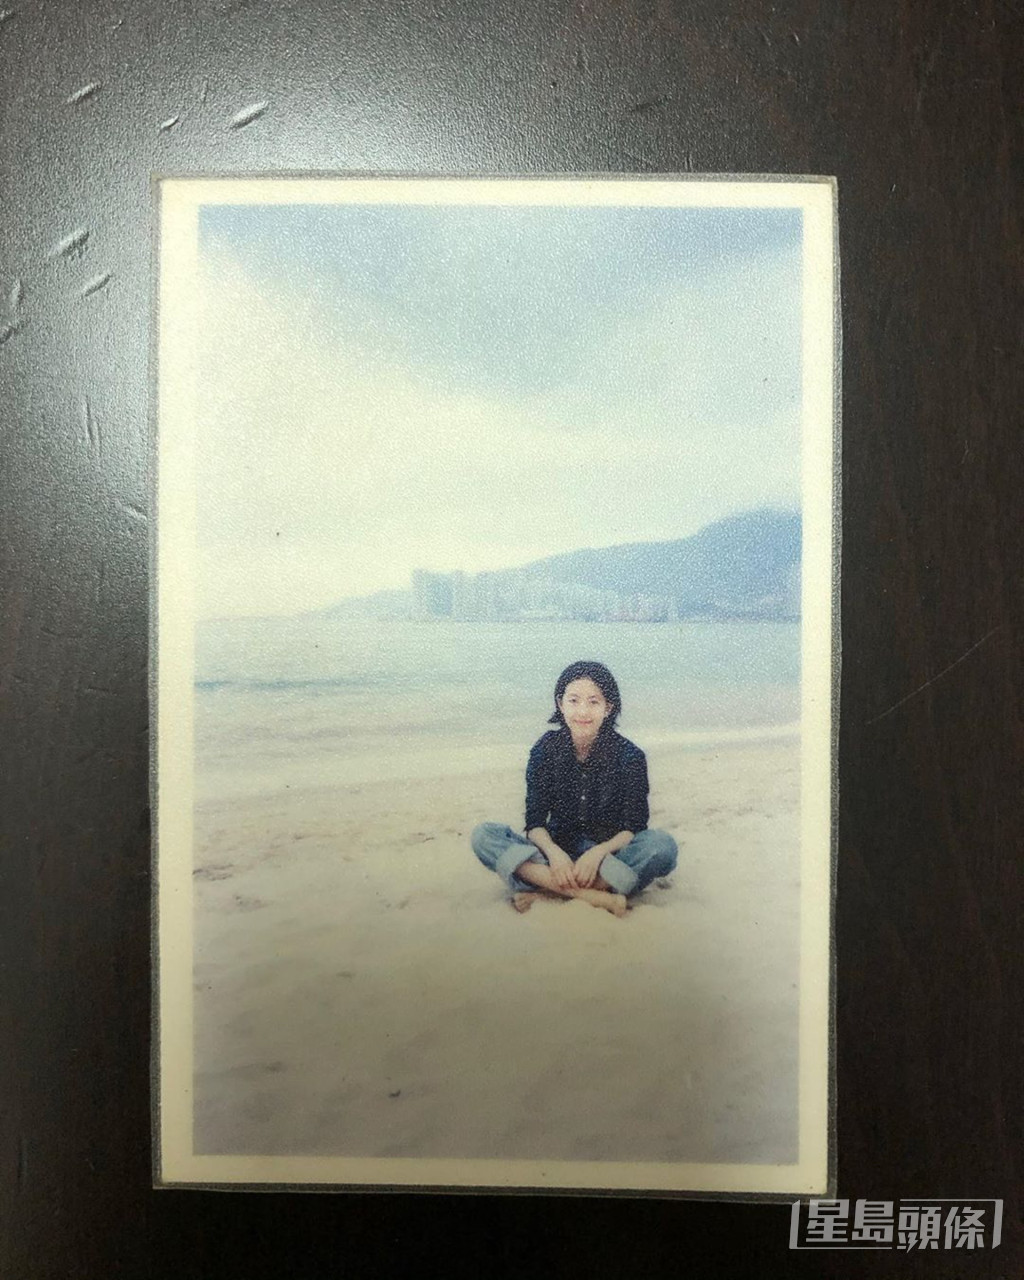 唐詠詩曾在社交網貼出中三的照片，見她當時樣貌清純，與初入行時分別不大。